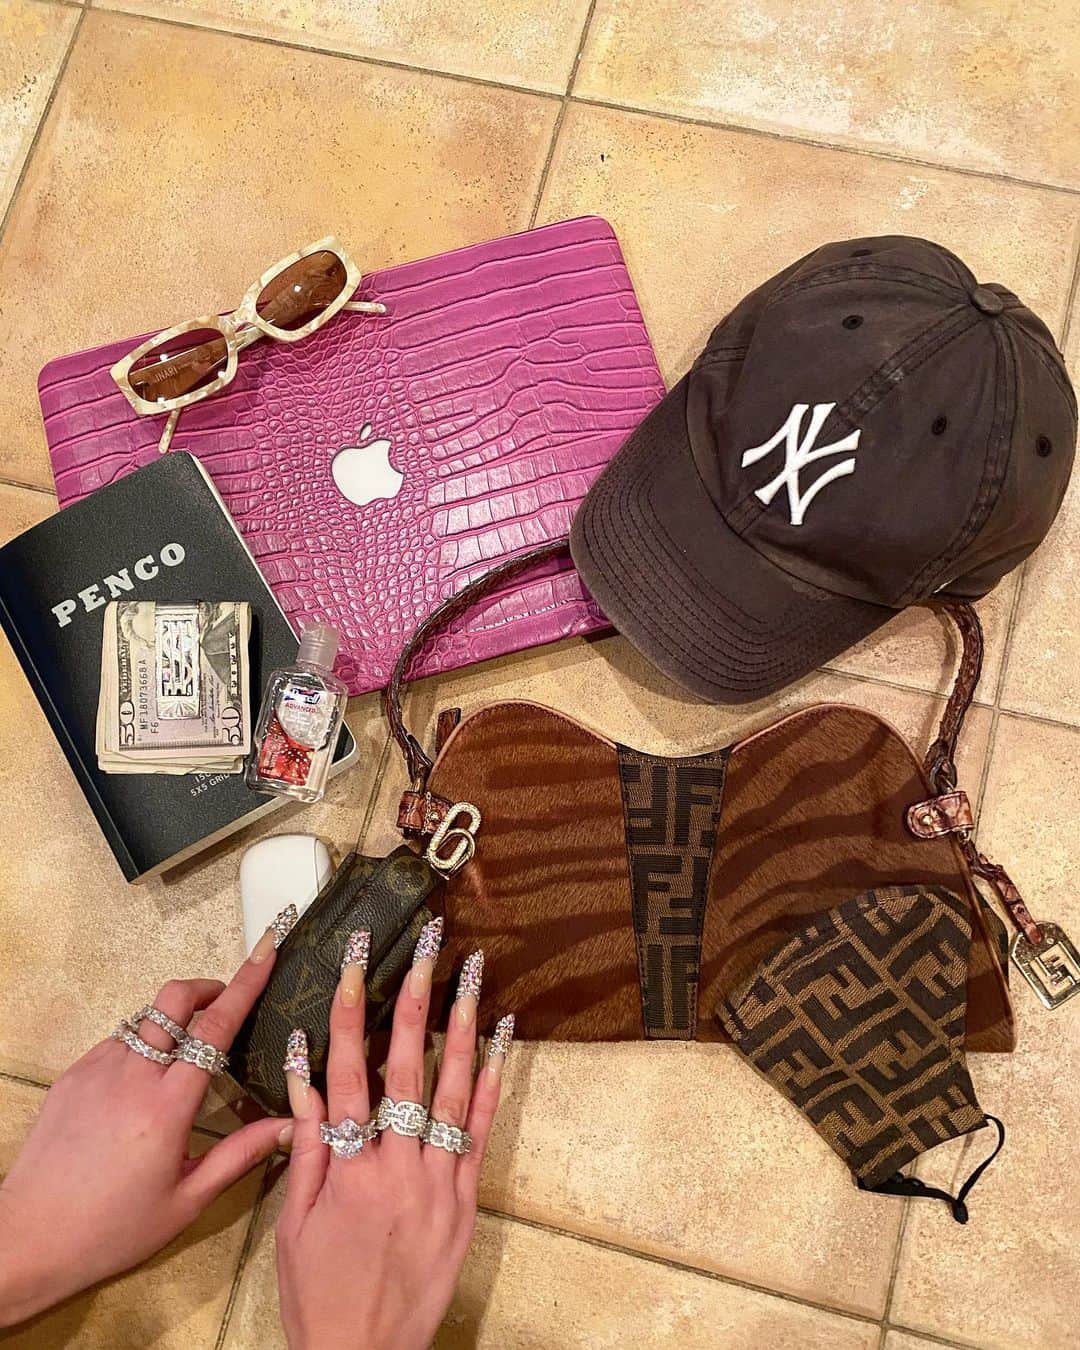 moanaのインスタグラム：「Has the contents of your bag changed after covid-19？🧐 ・jewelry @bb_fridge  ・macbook cover @chic.geeks  ・bag @fendi  ・mask @jaydeestudios  ・@iqos with @louisvuitton vintage case  ・60's vintage money clip ・luxury nails @mamijingu  ・sunglasses @inari_tsuchiya   コロナがやってきてみんなはBAGの中身は変わりましたか？私はマスクはもうオシャレの一部として楽しむようにしてます☺︎毎日違うマスクをしたり、アルコール入りのウェットティッシュや小さなハンカチもきちんと持つ様に改めて、外に出る時は気分が下がらない様になるべくBAGの中も可愛いくして開けた時に楽しい気分になるようにしてます☺︎ そして爪も常にキラキラ、BBのjewelryも沢山付けて。」